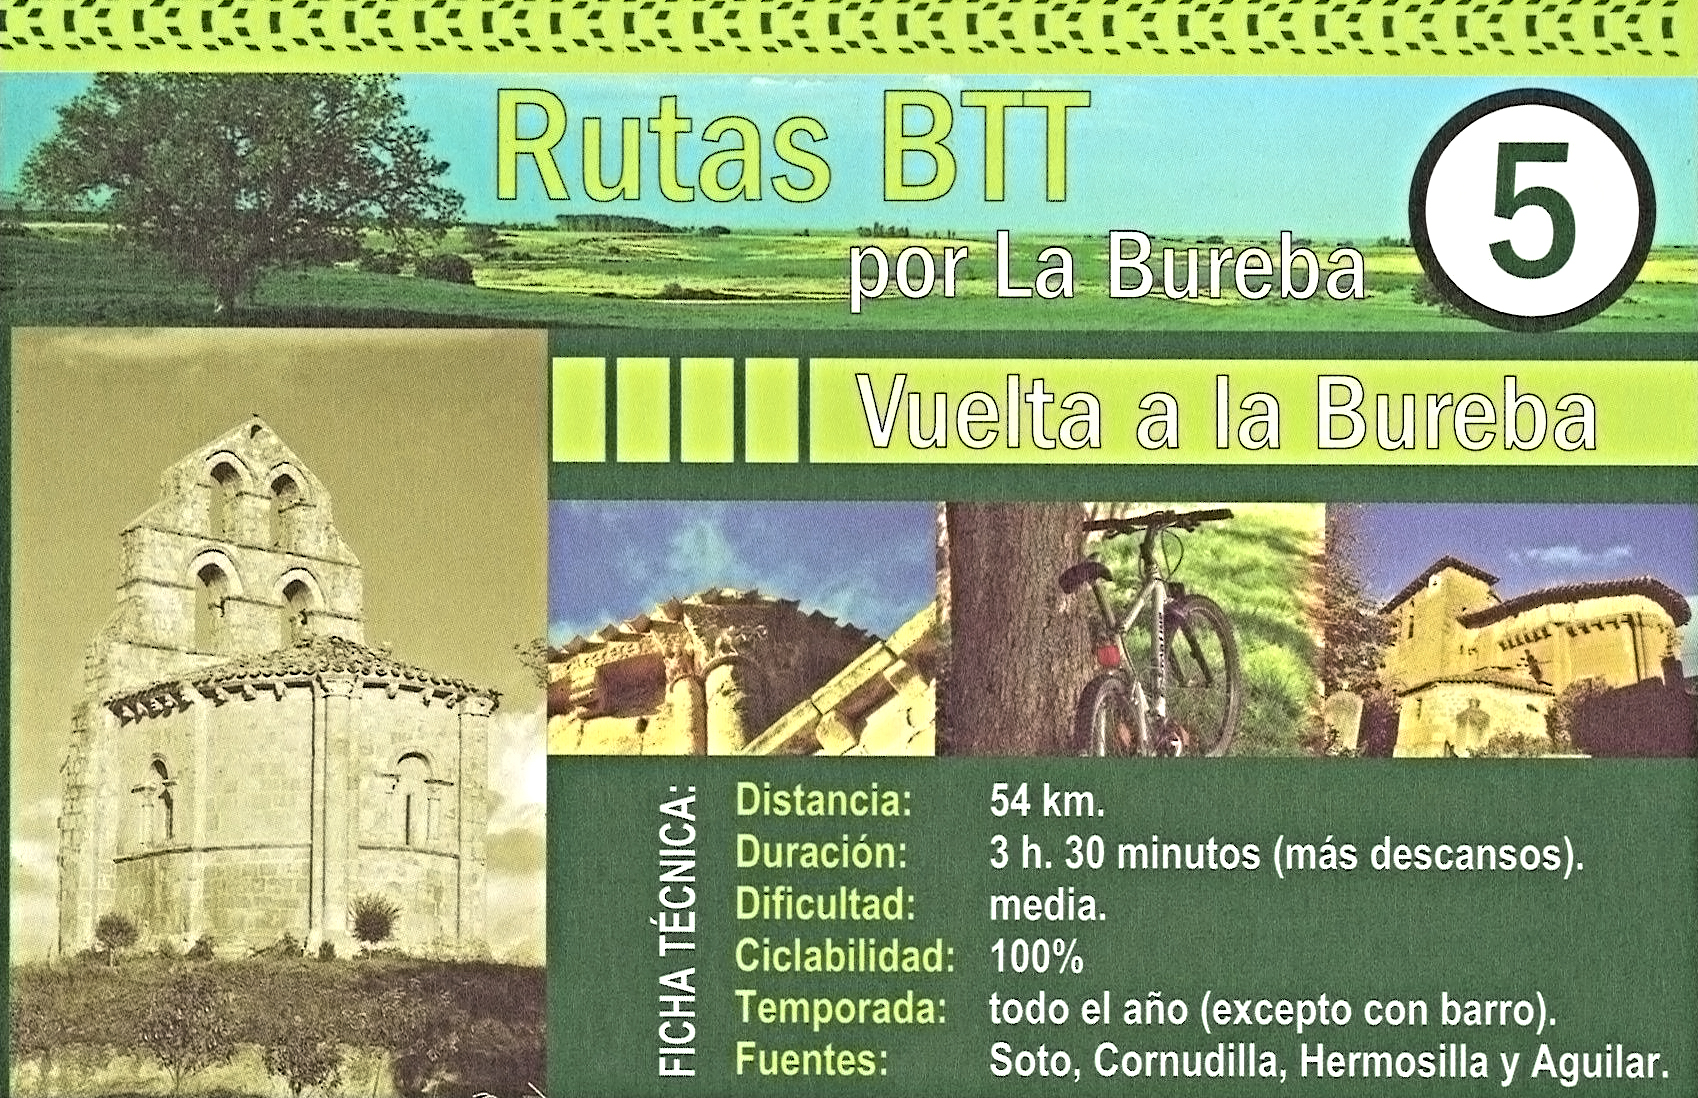 Rutas BTT, Comarca de La Bureba - Burgos - Ruta por el Románico de La Bureba - Burgos ✈️ Foro Castilla y León